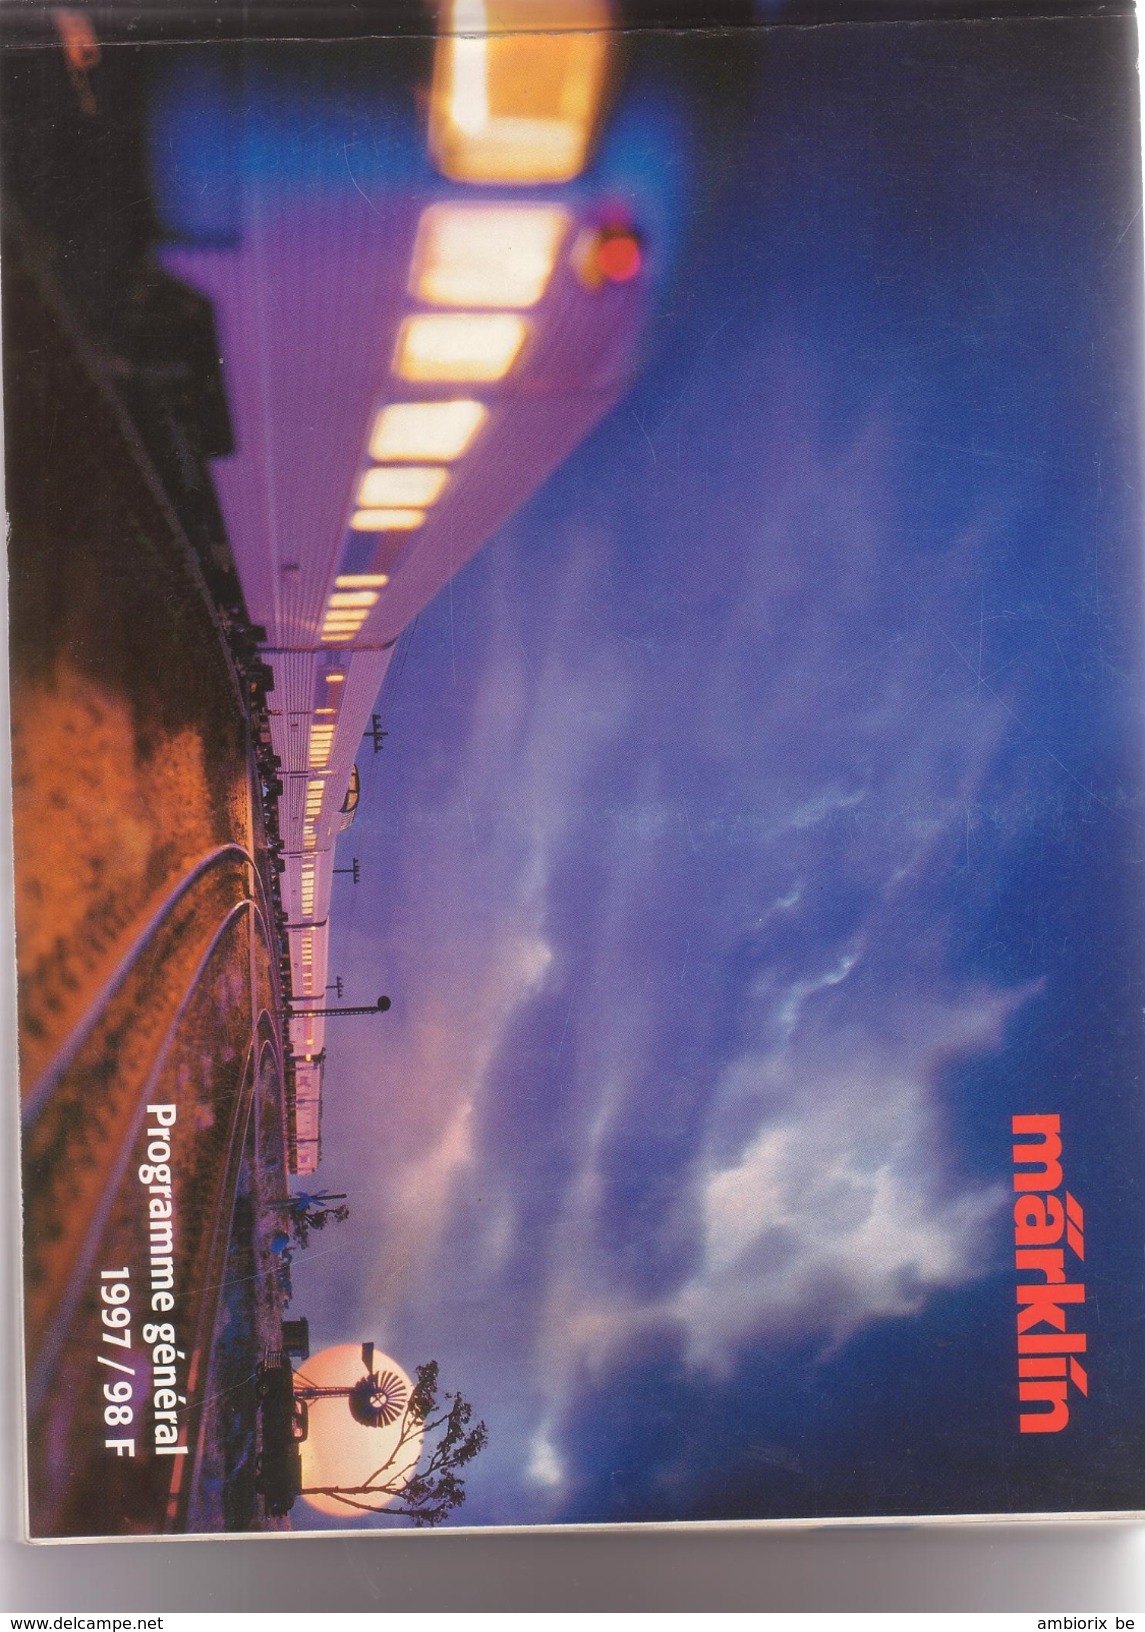 Marklin - Catalogue 1997-98 - French